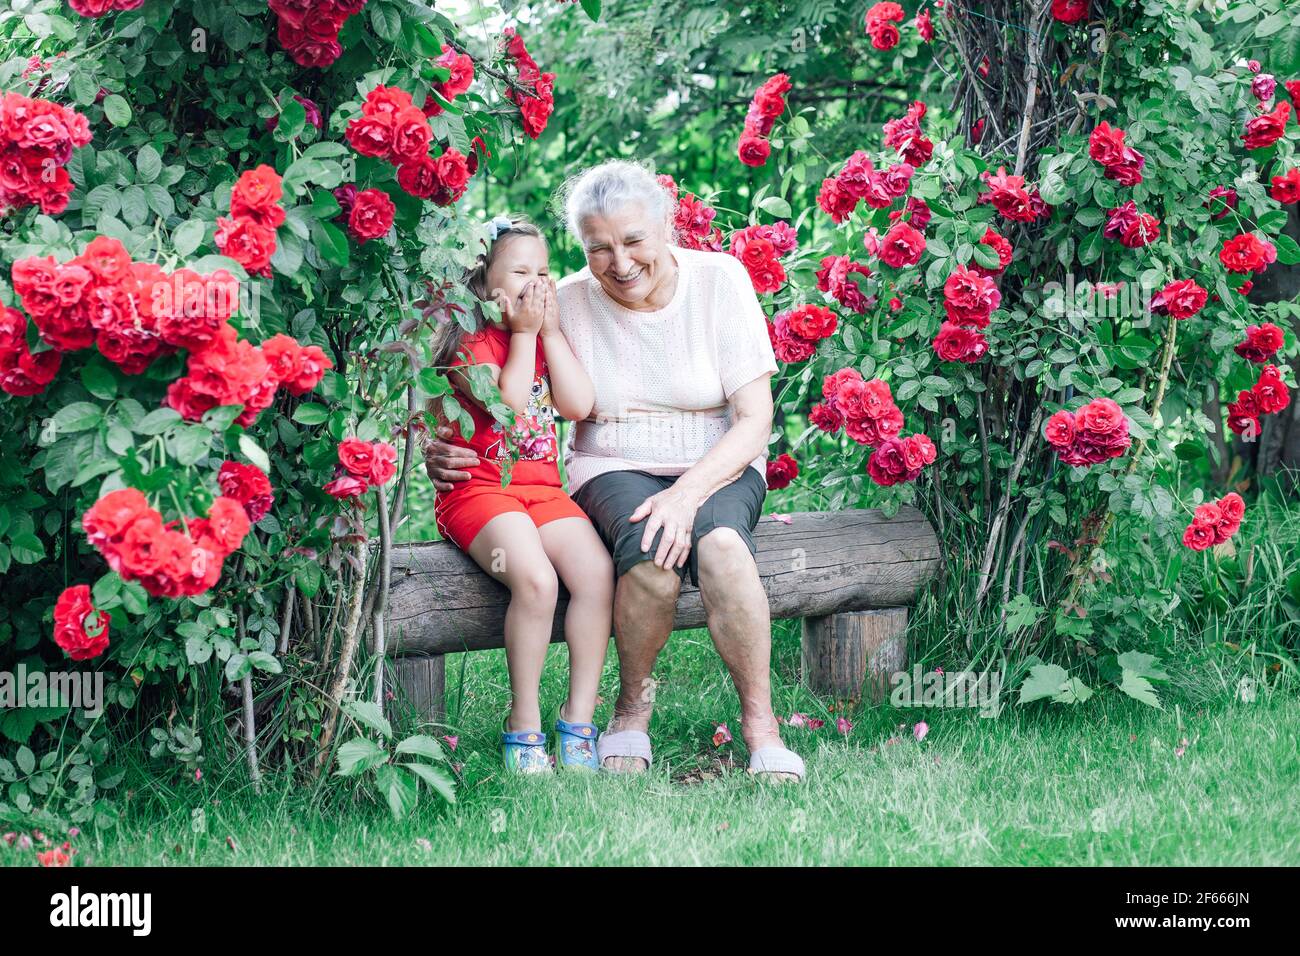 vacanza estiva con una nonna nel villaggio, una donna dai capelli grigi abbraccia e scherza con un bambino su una panchina vicino ai cespugli di rose nel giardino Foto Stock